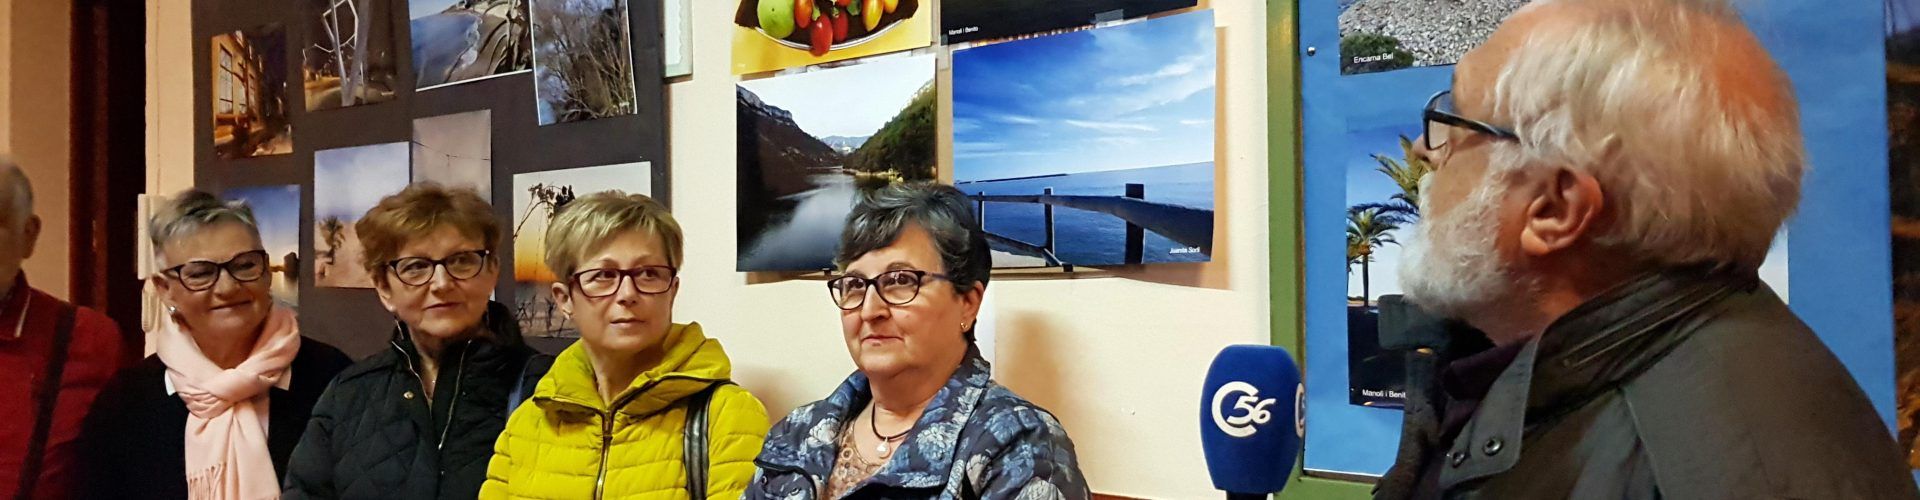 Las fotografías con teléfonos móviles: un recurso explotado por los mayores en Vinaròs